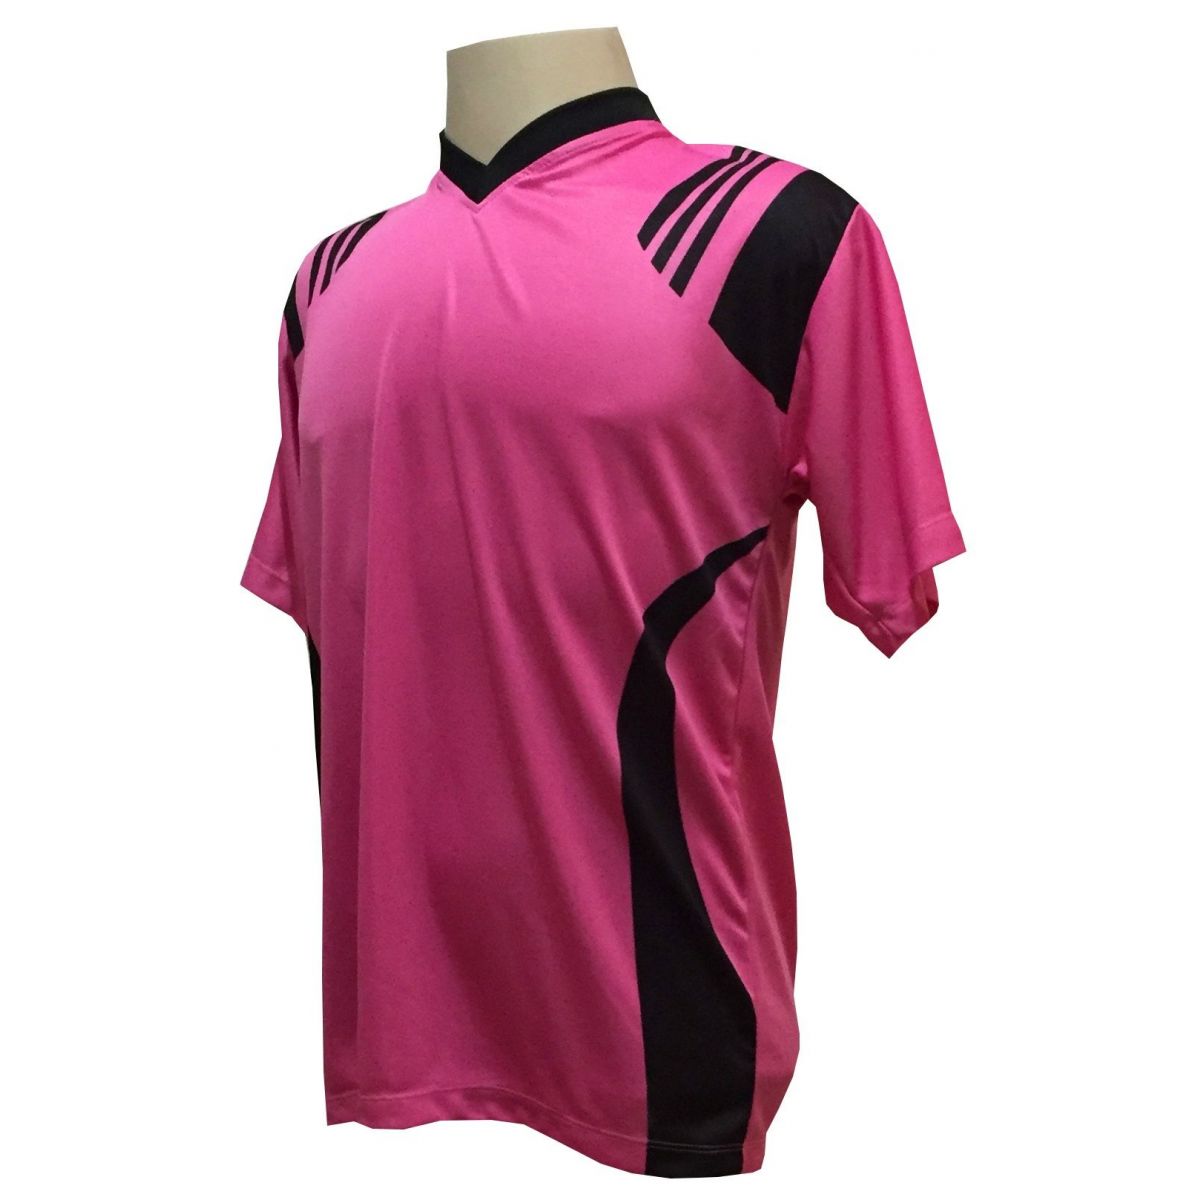 Fardamento Completo modelo Roma Pink/Preto 12+1 (12 camisas + 12 calções + 13 pares de meiões + 1 conjunto de goleiro) + Brindes